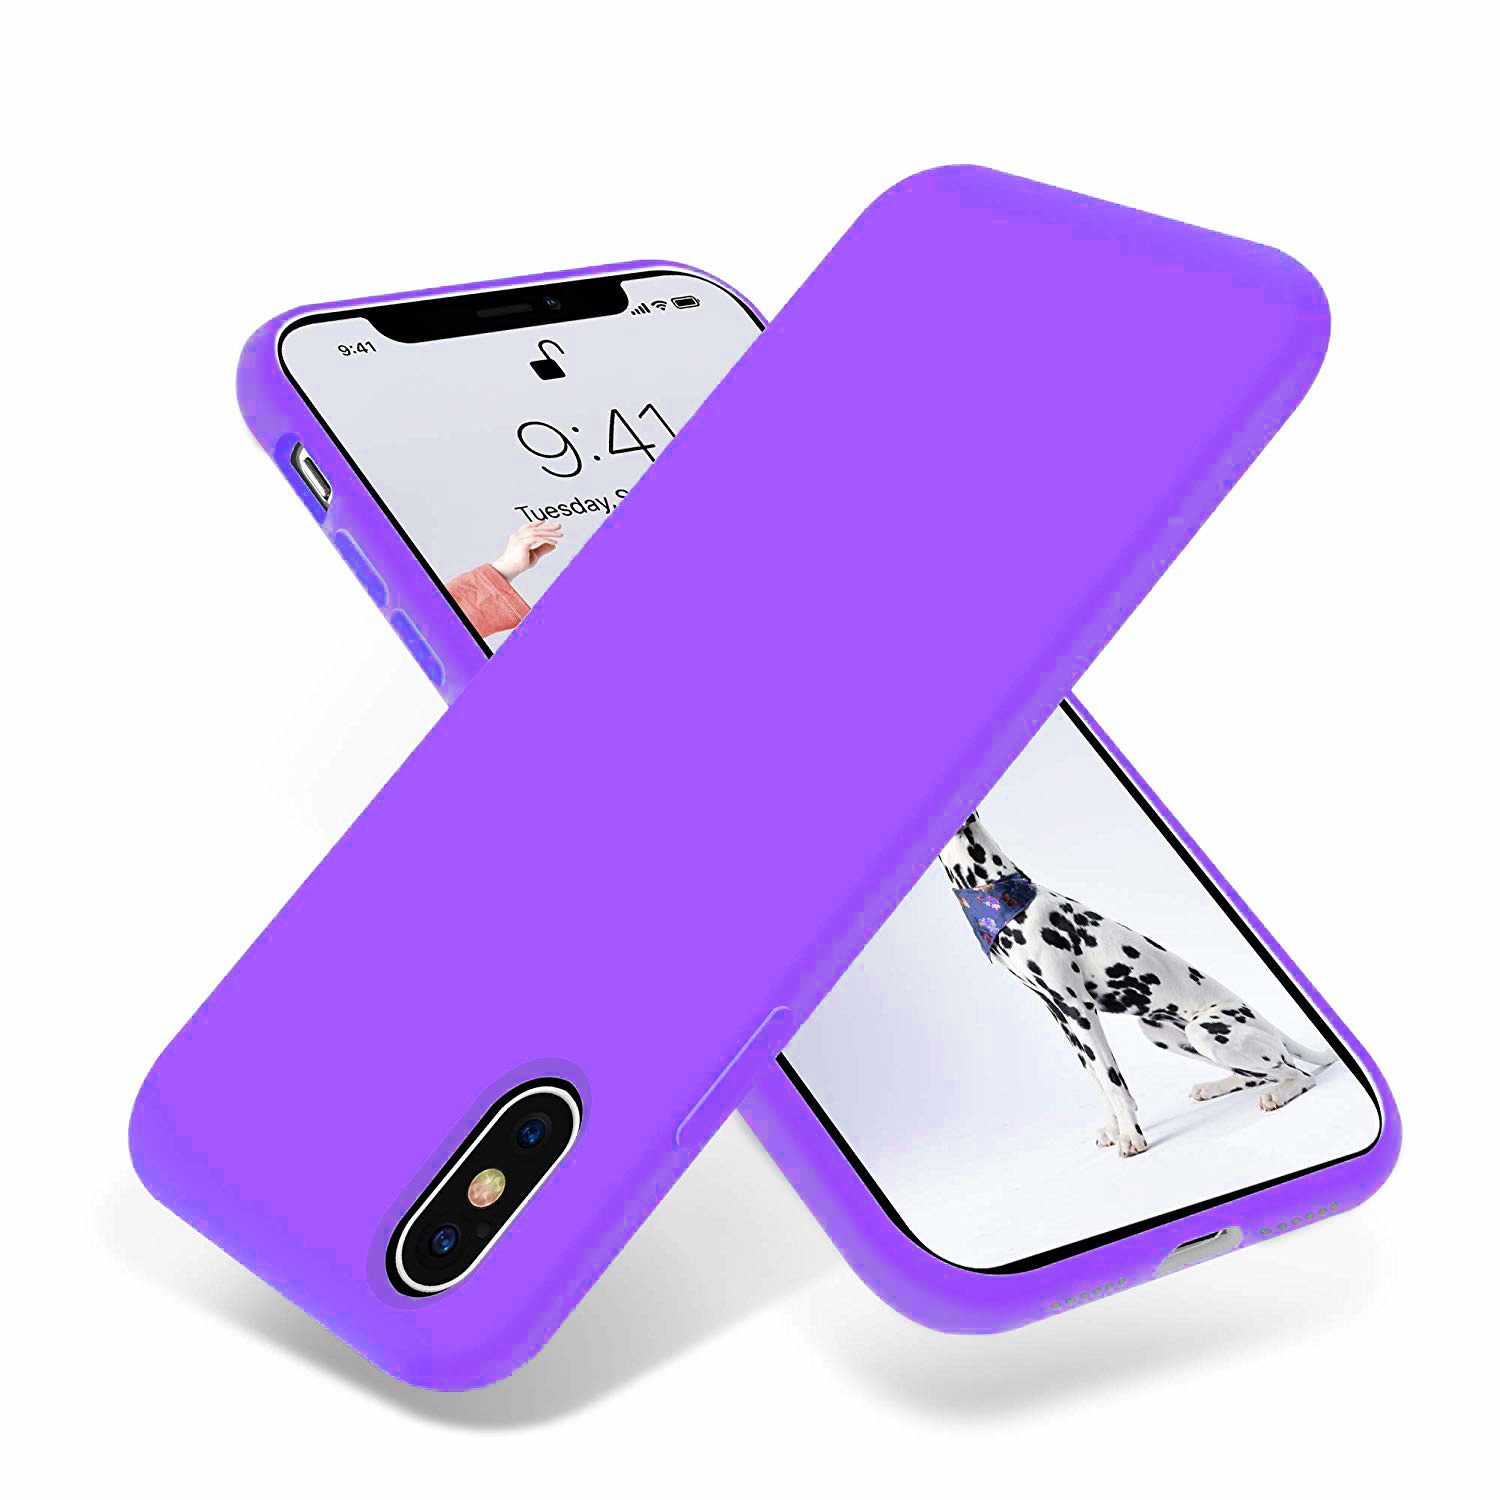 Funda de silicona Pantone iPhone Xs Max (morado) 